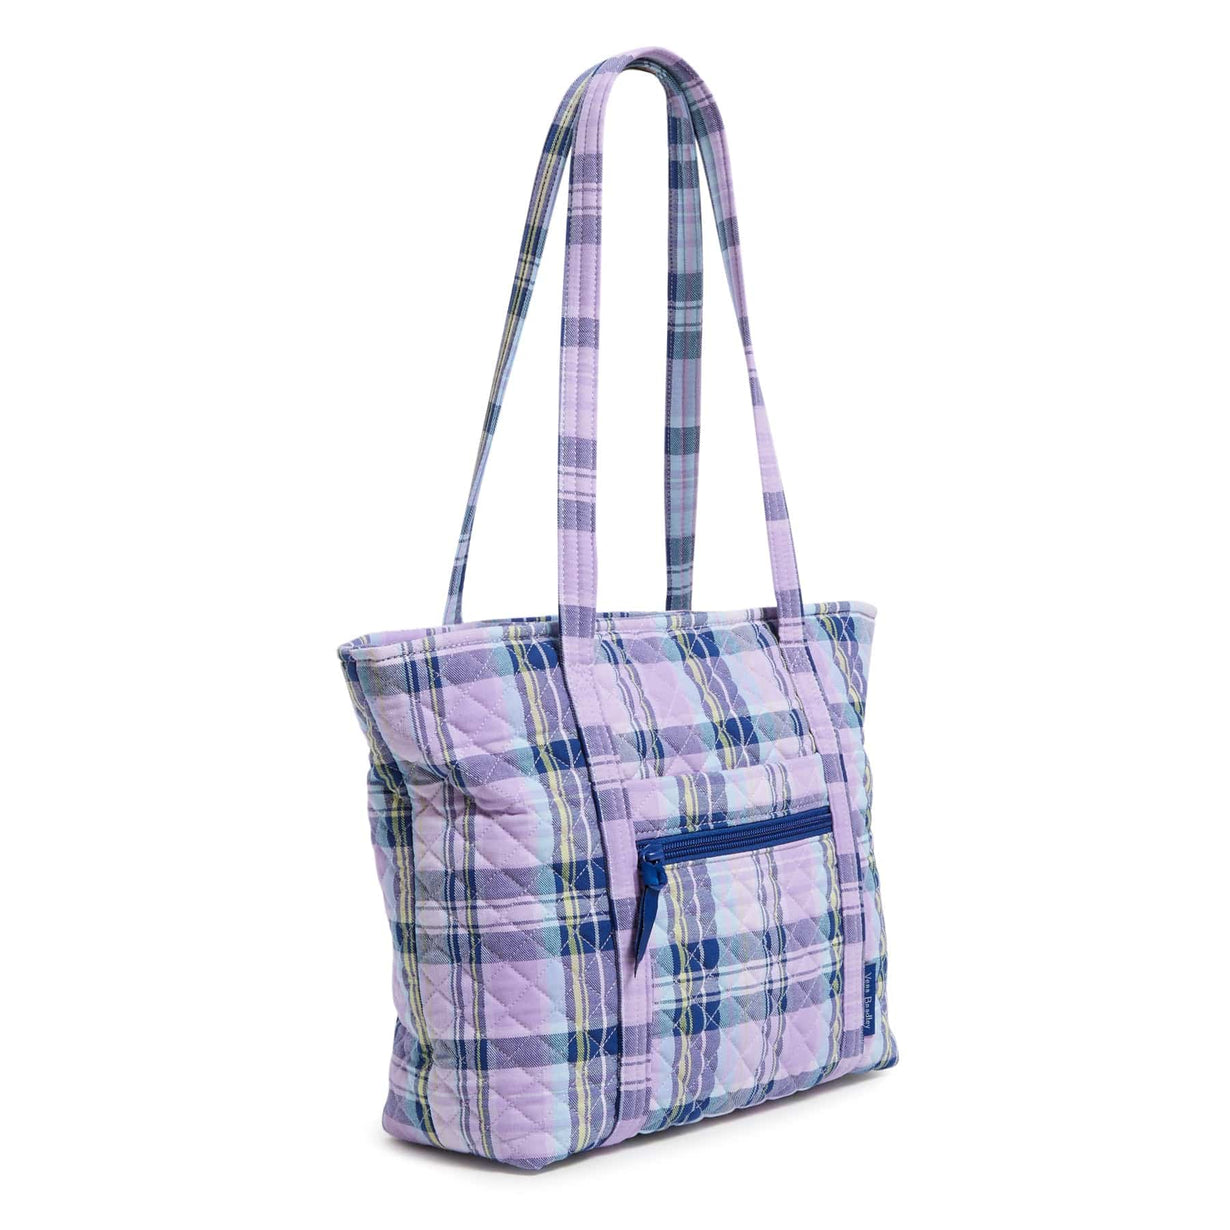 Mini Vera Bradley Pouch | Vera bradley handbags, Vera bradley tote bags,  Hipster purse